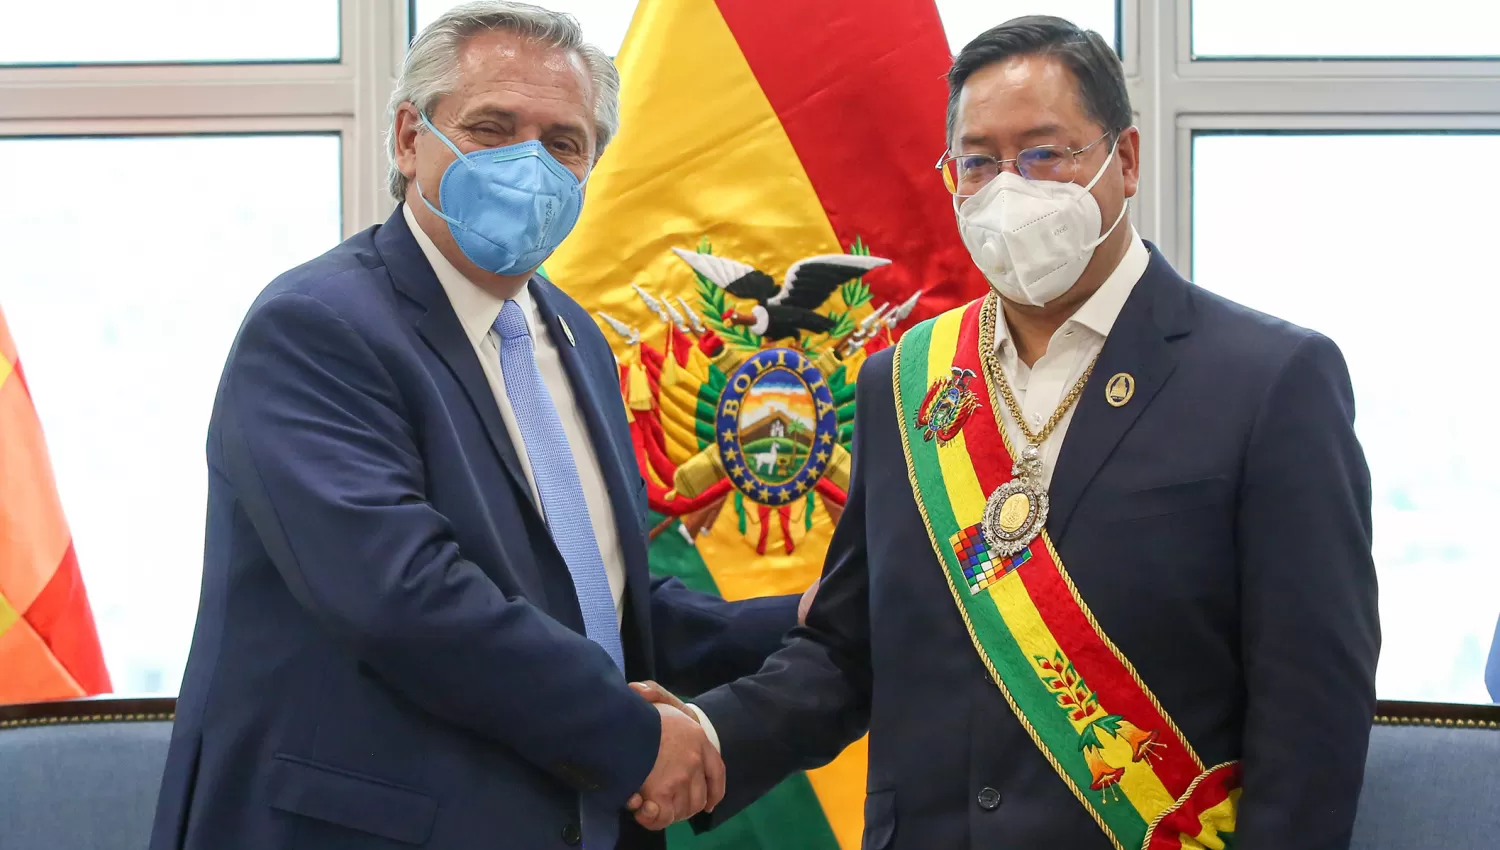 PRIMERAS IMPRESIONES. El presidente de Bolivia, Luis Arce, asumió ayer y hoy ya hizo un duro cuestionamiento sobre la situación en la que halló al país.